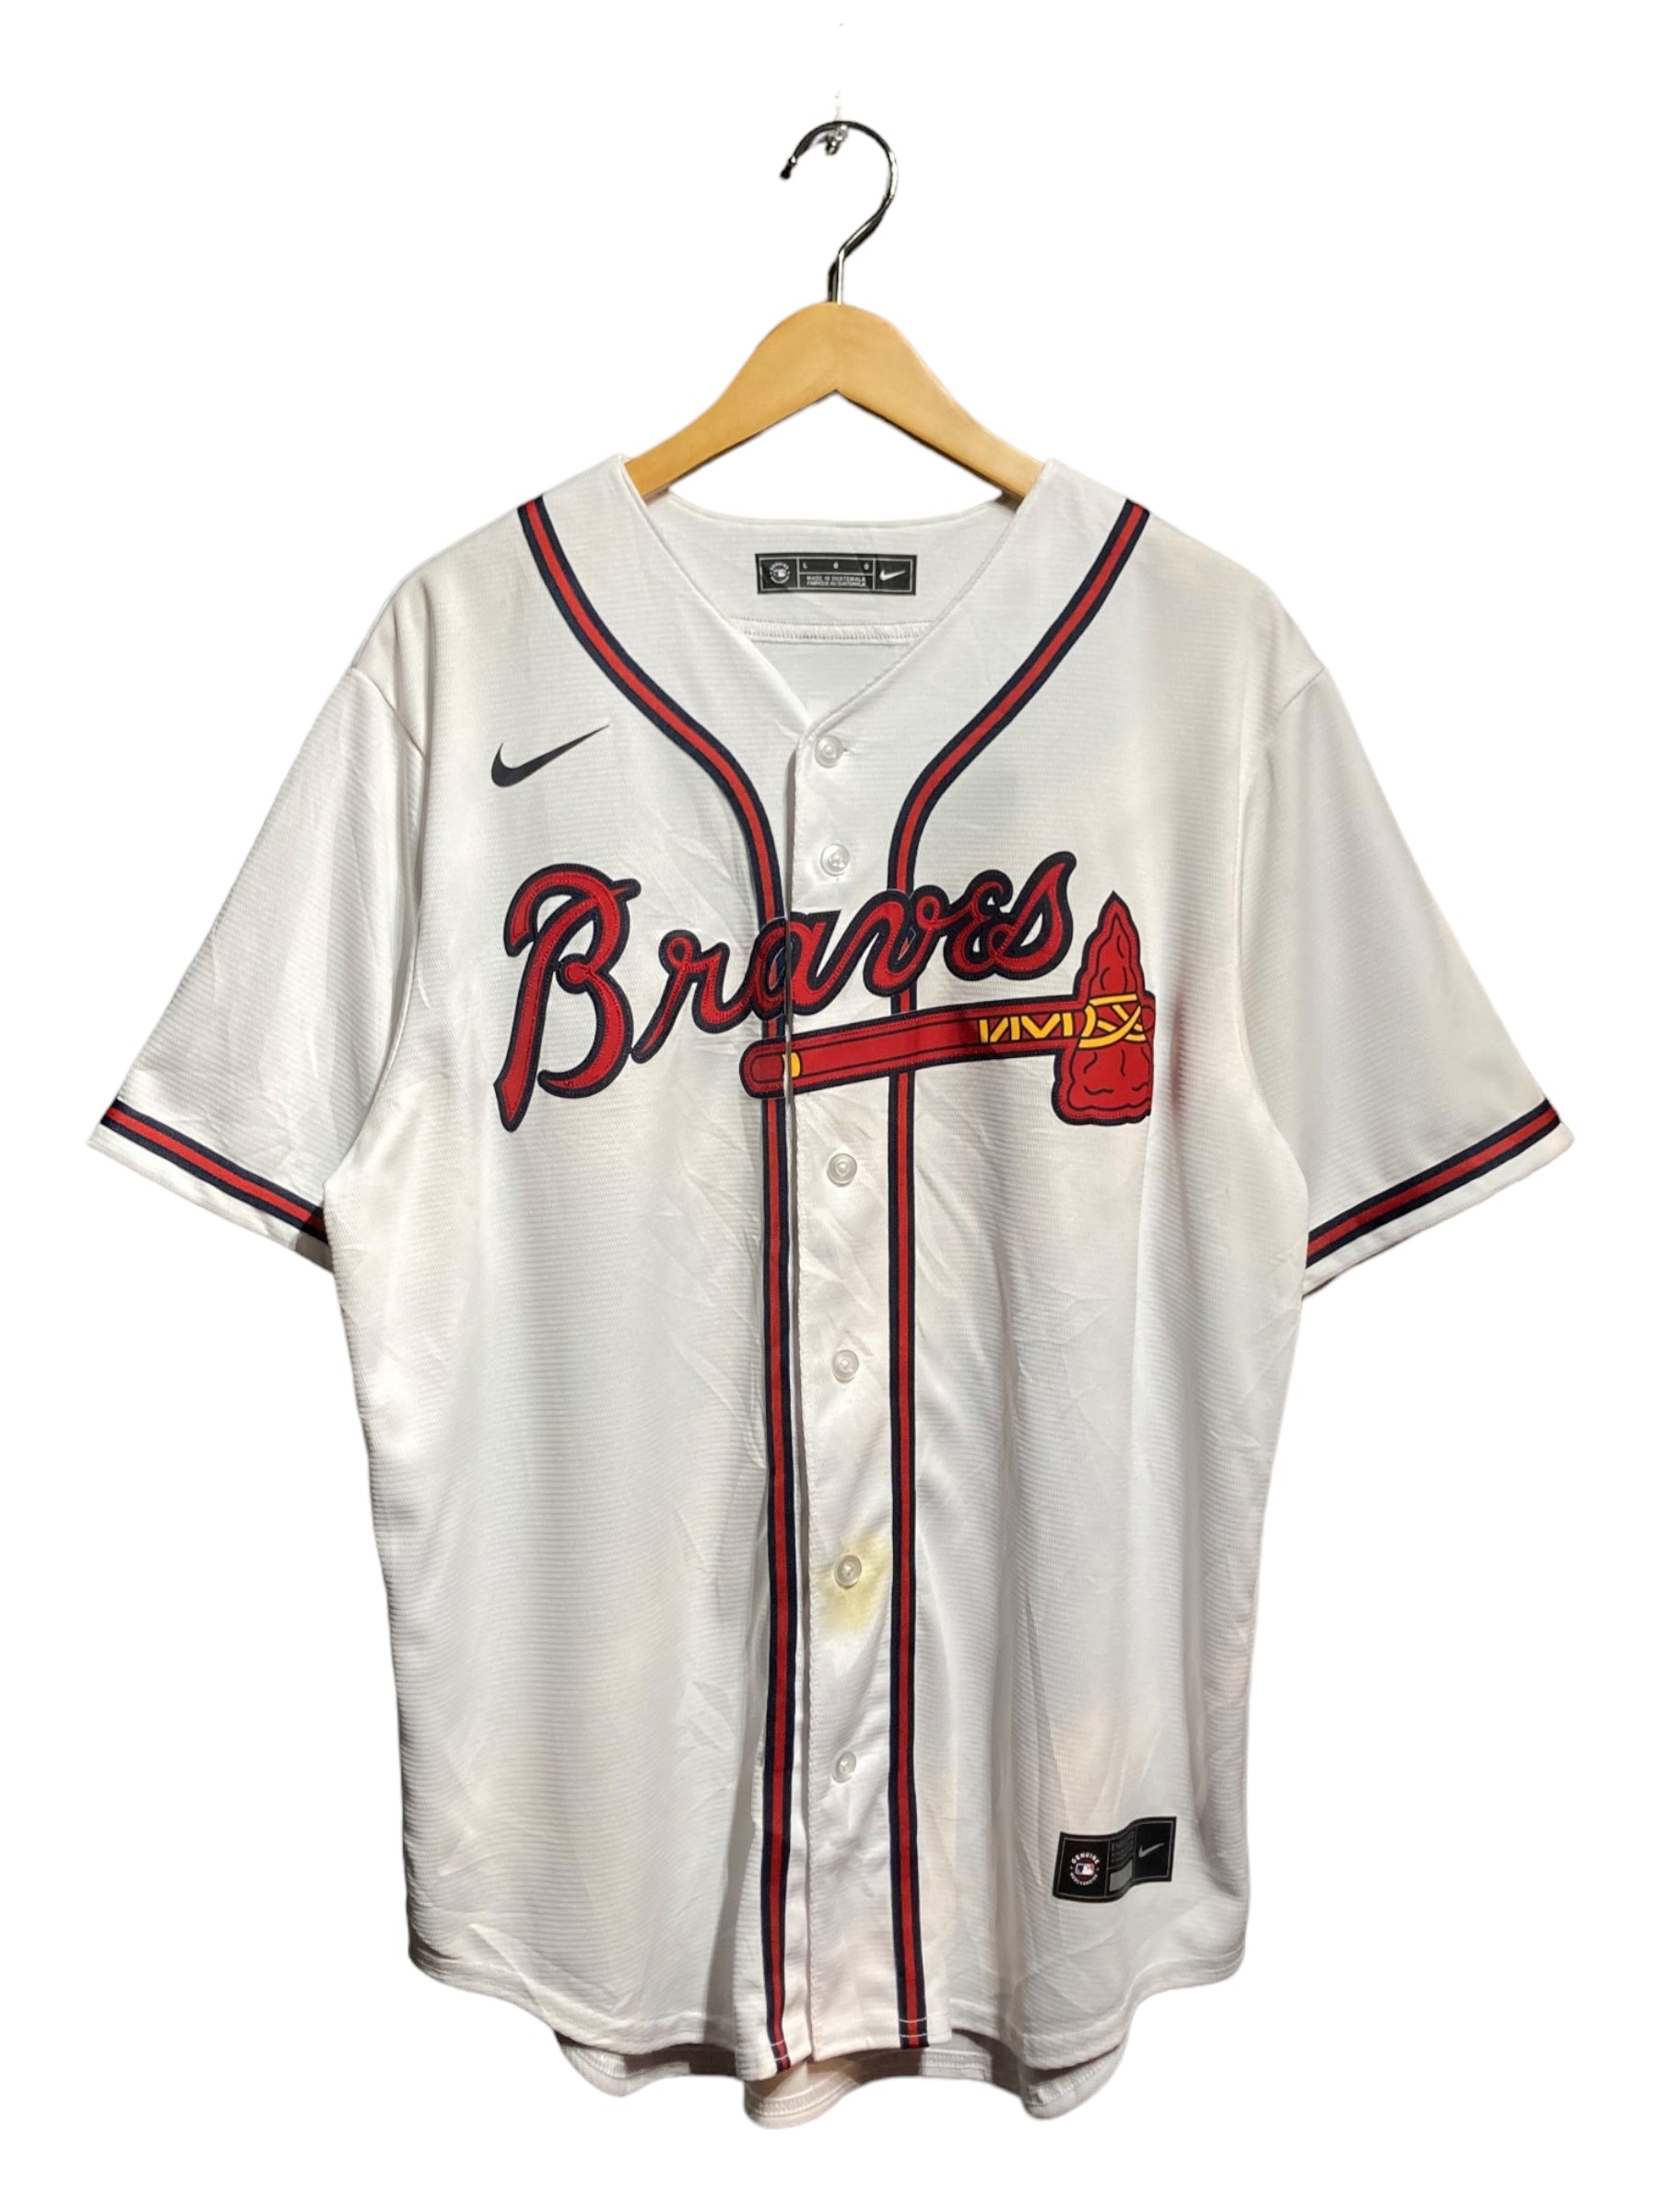 Braves ブレーブス NIKE ナイキ MLB BASEBALL ベースボールシャツ ユニフォーム